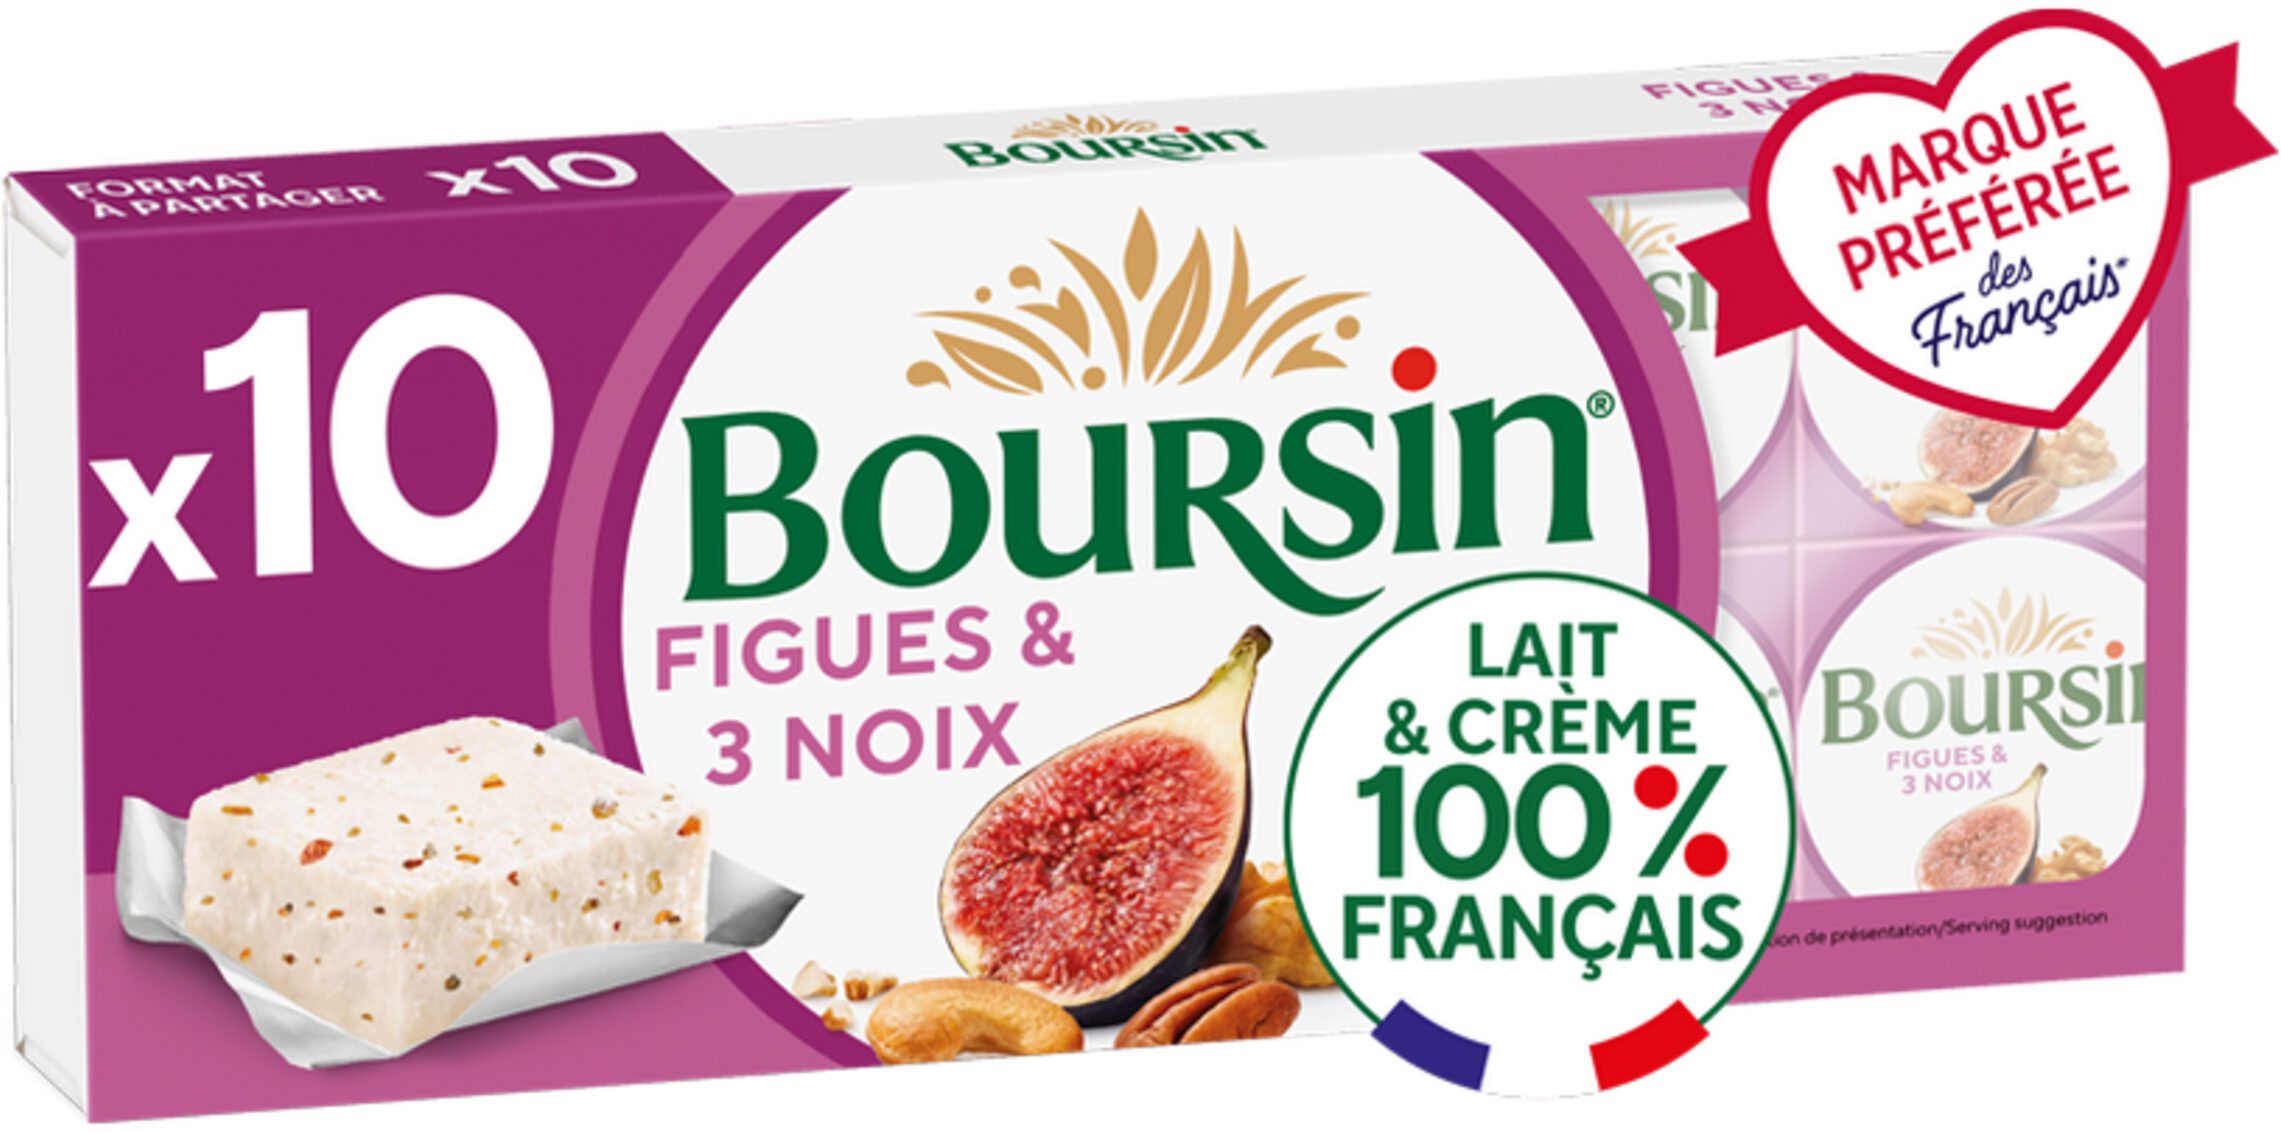 Boursin® Figues et 3 Noix Portion x10 - Product - fr